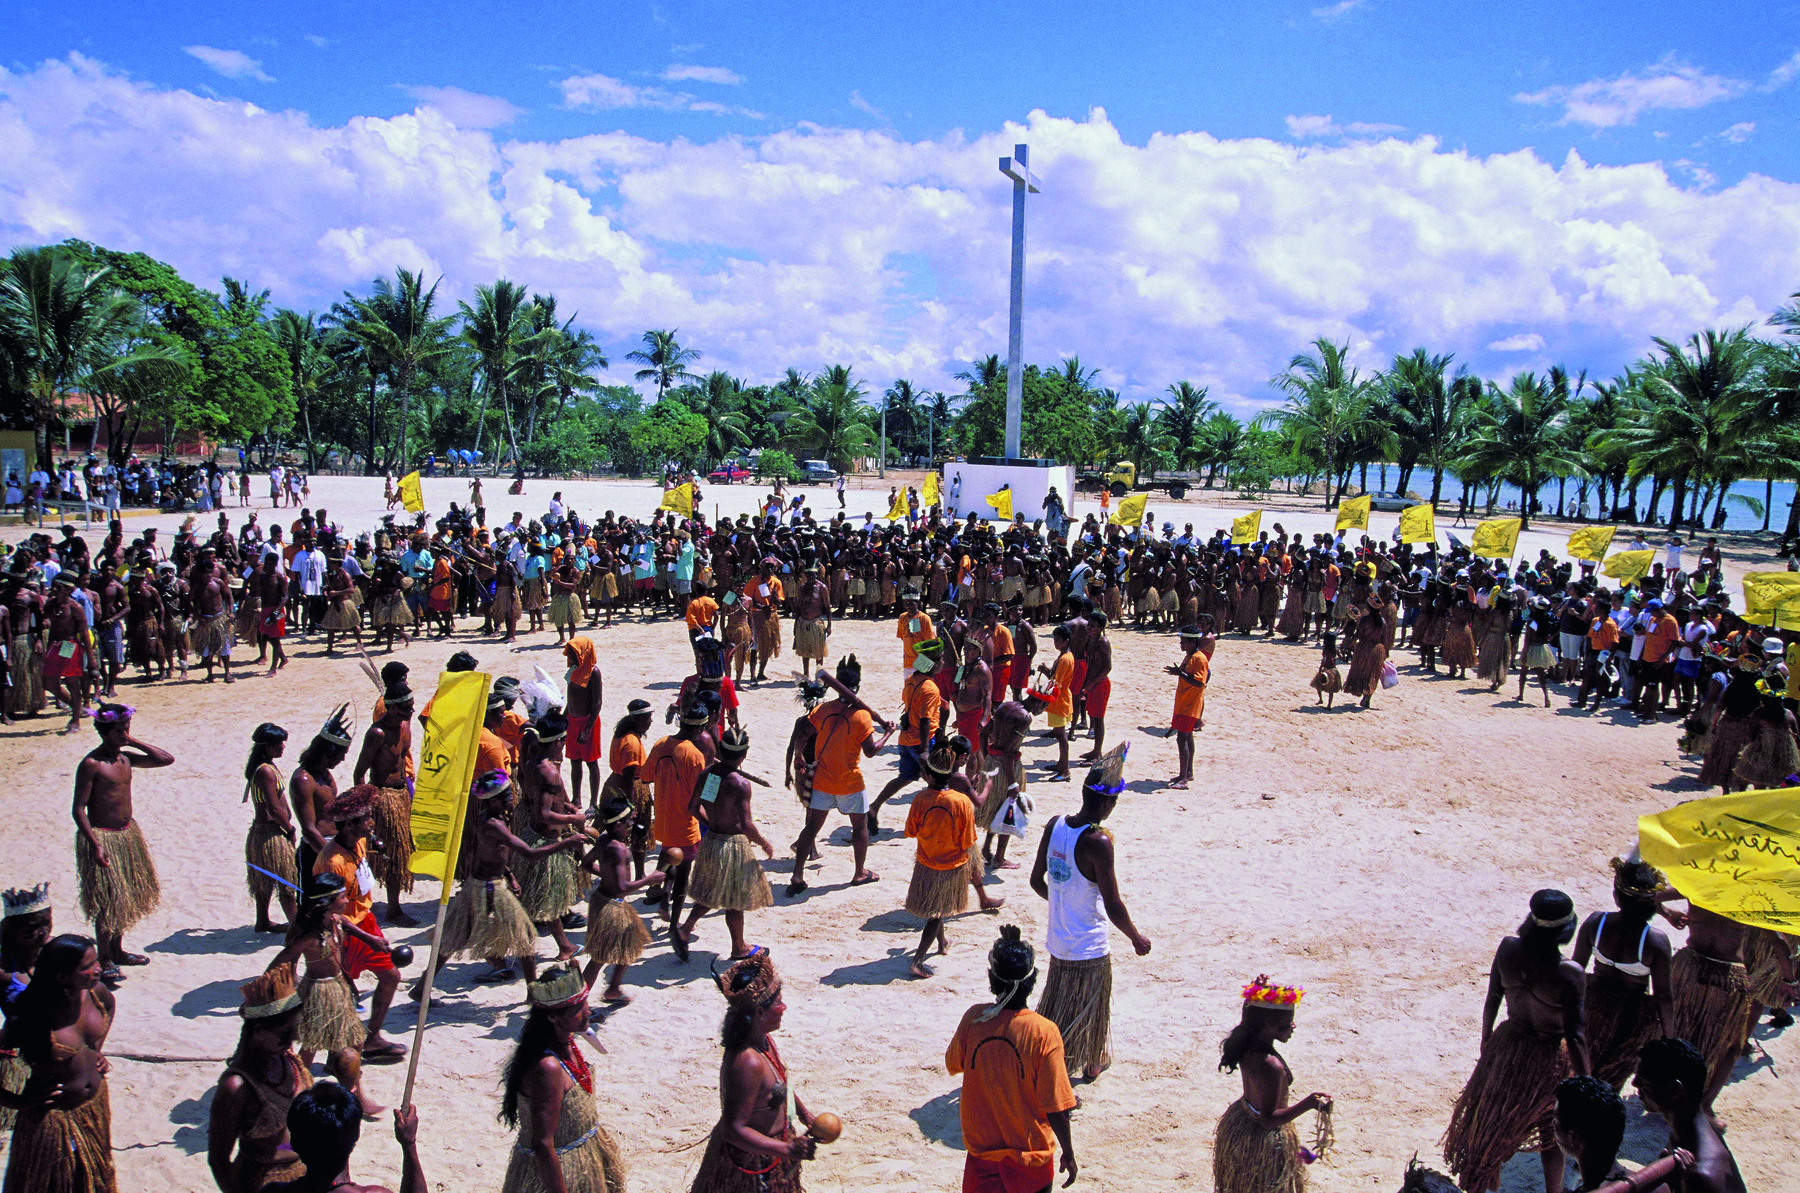 Fotografia. Grupo de pessoas indígenas reunidas em uma grande roda na praia. No centro, alguns indígenas de camiseta laranja.